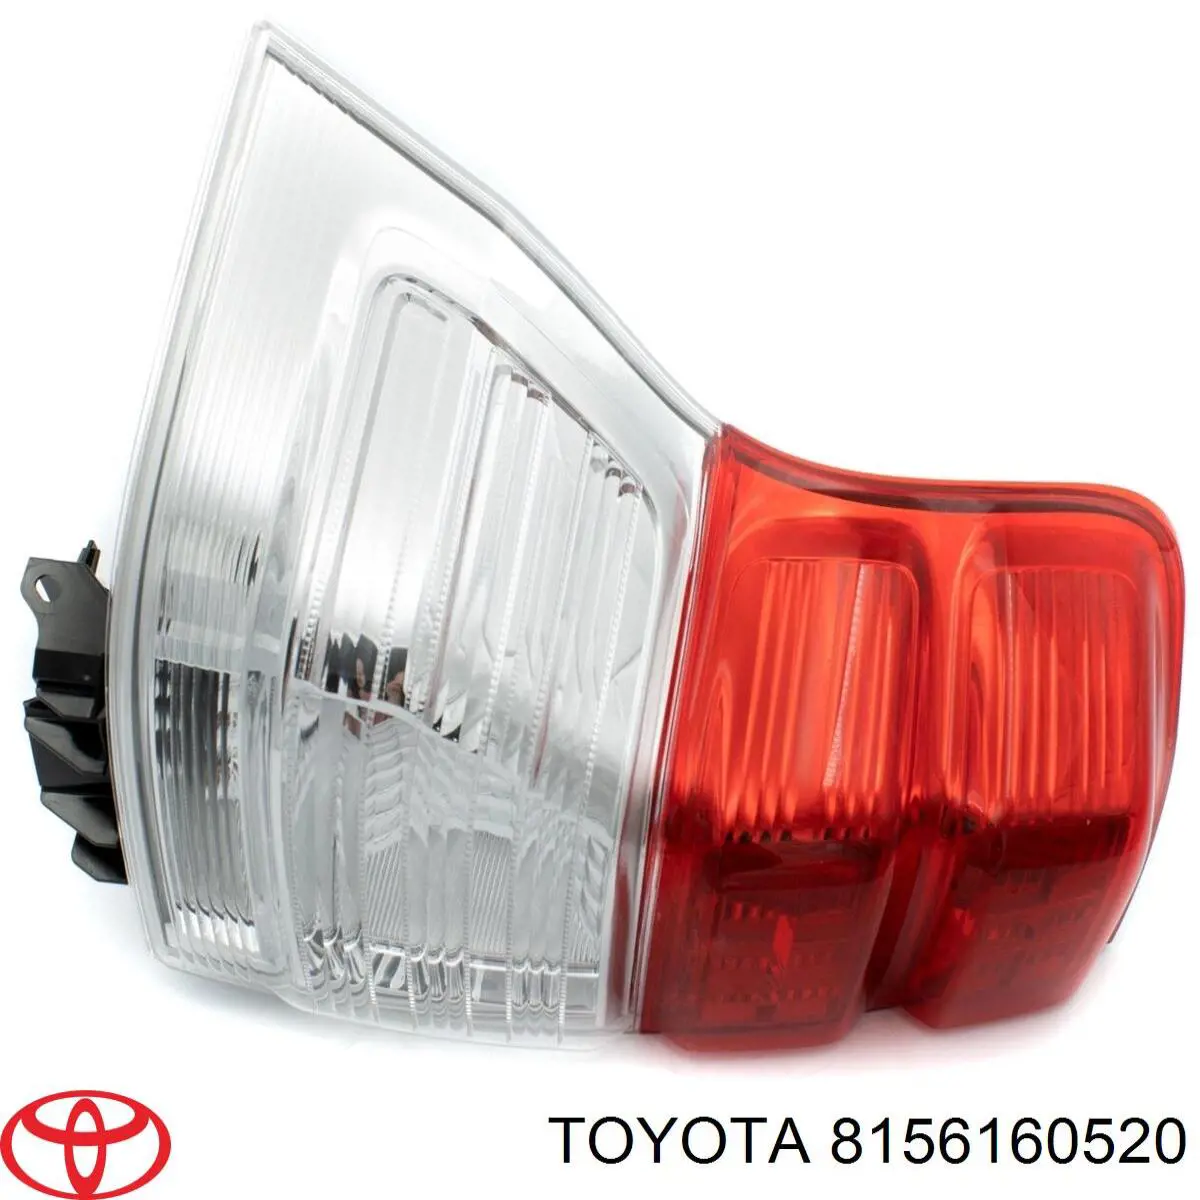 Lanterna traseira esquerda para Toyota Land Cruiser (J9)